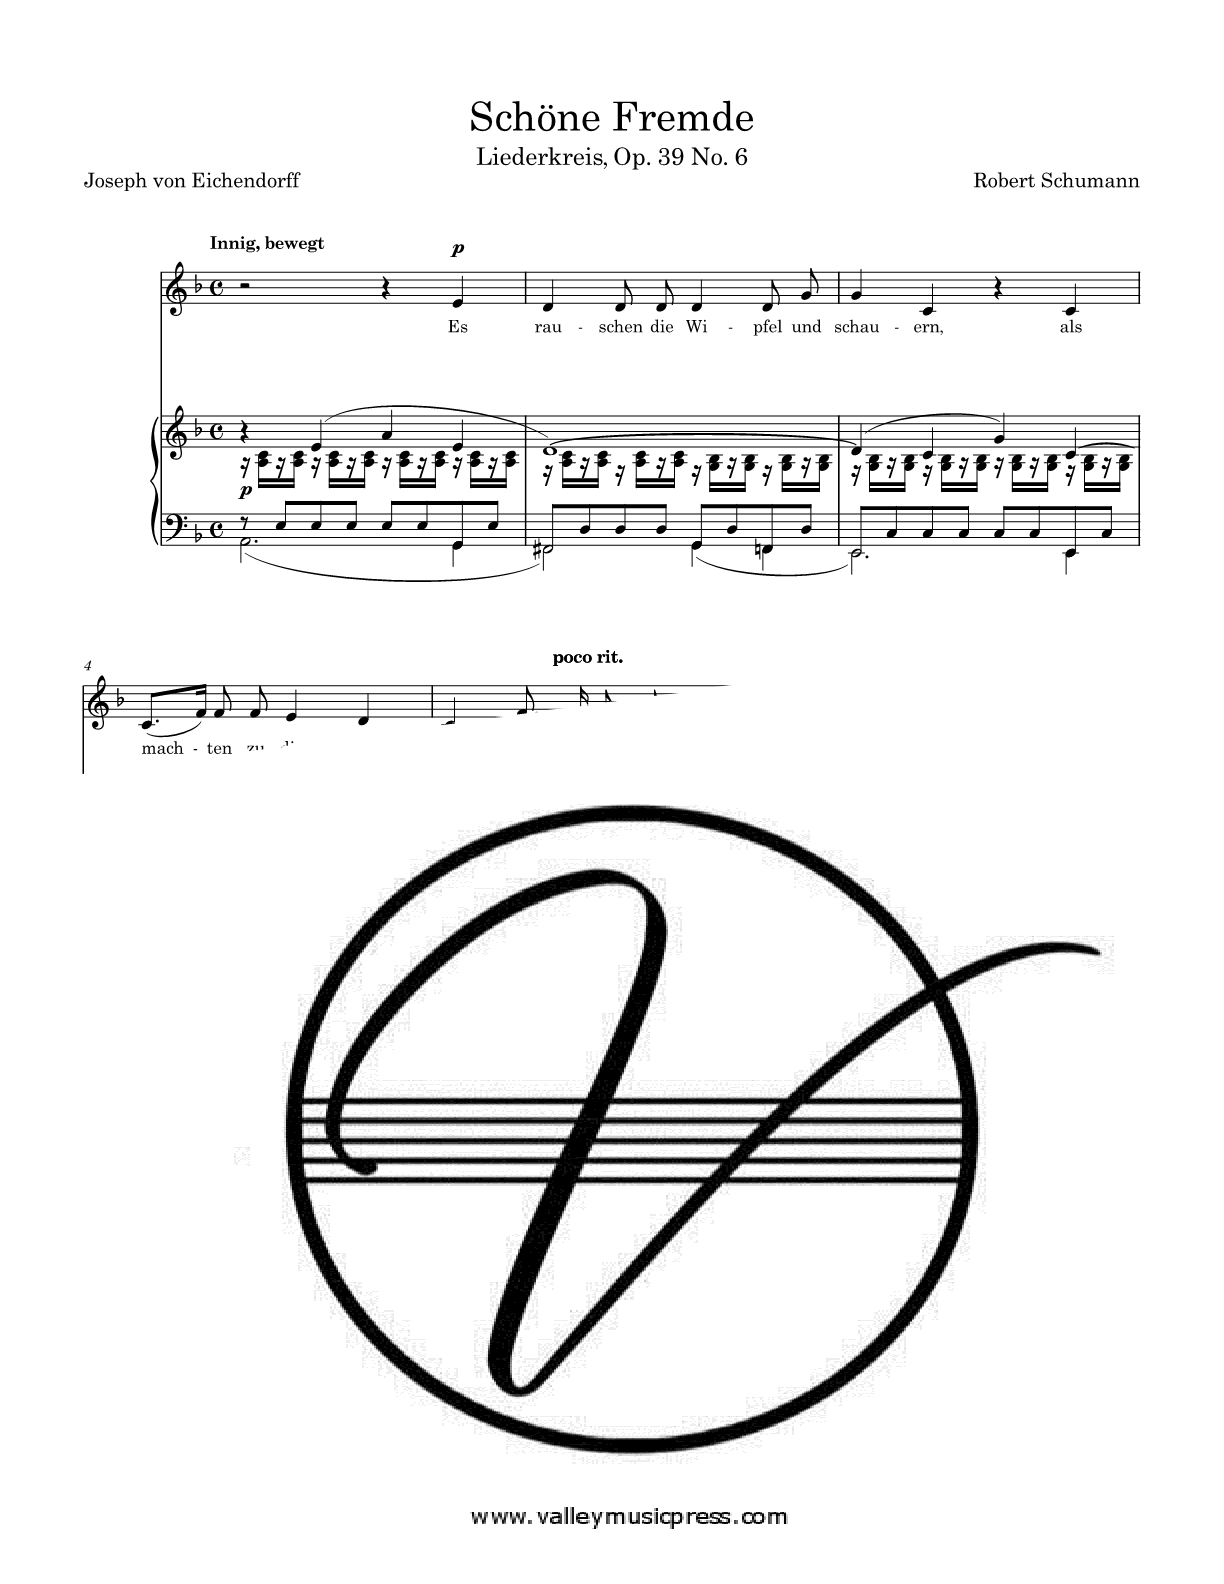 Schumann - Schone Fremde Op. 39 No. 6 (Voice)